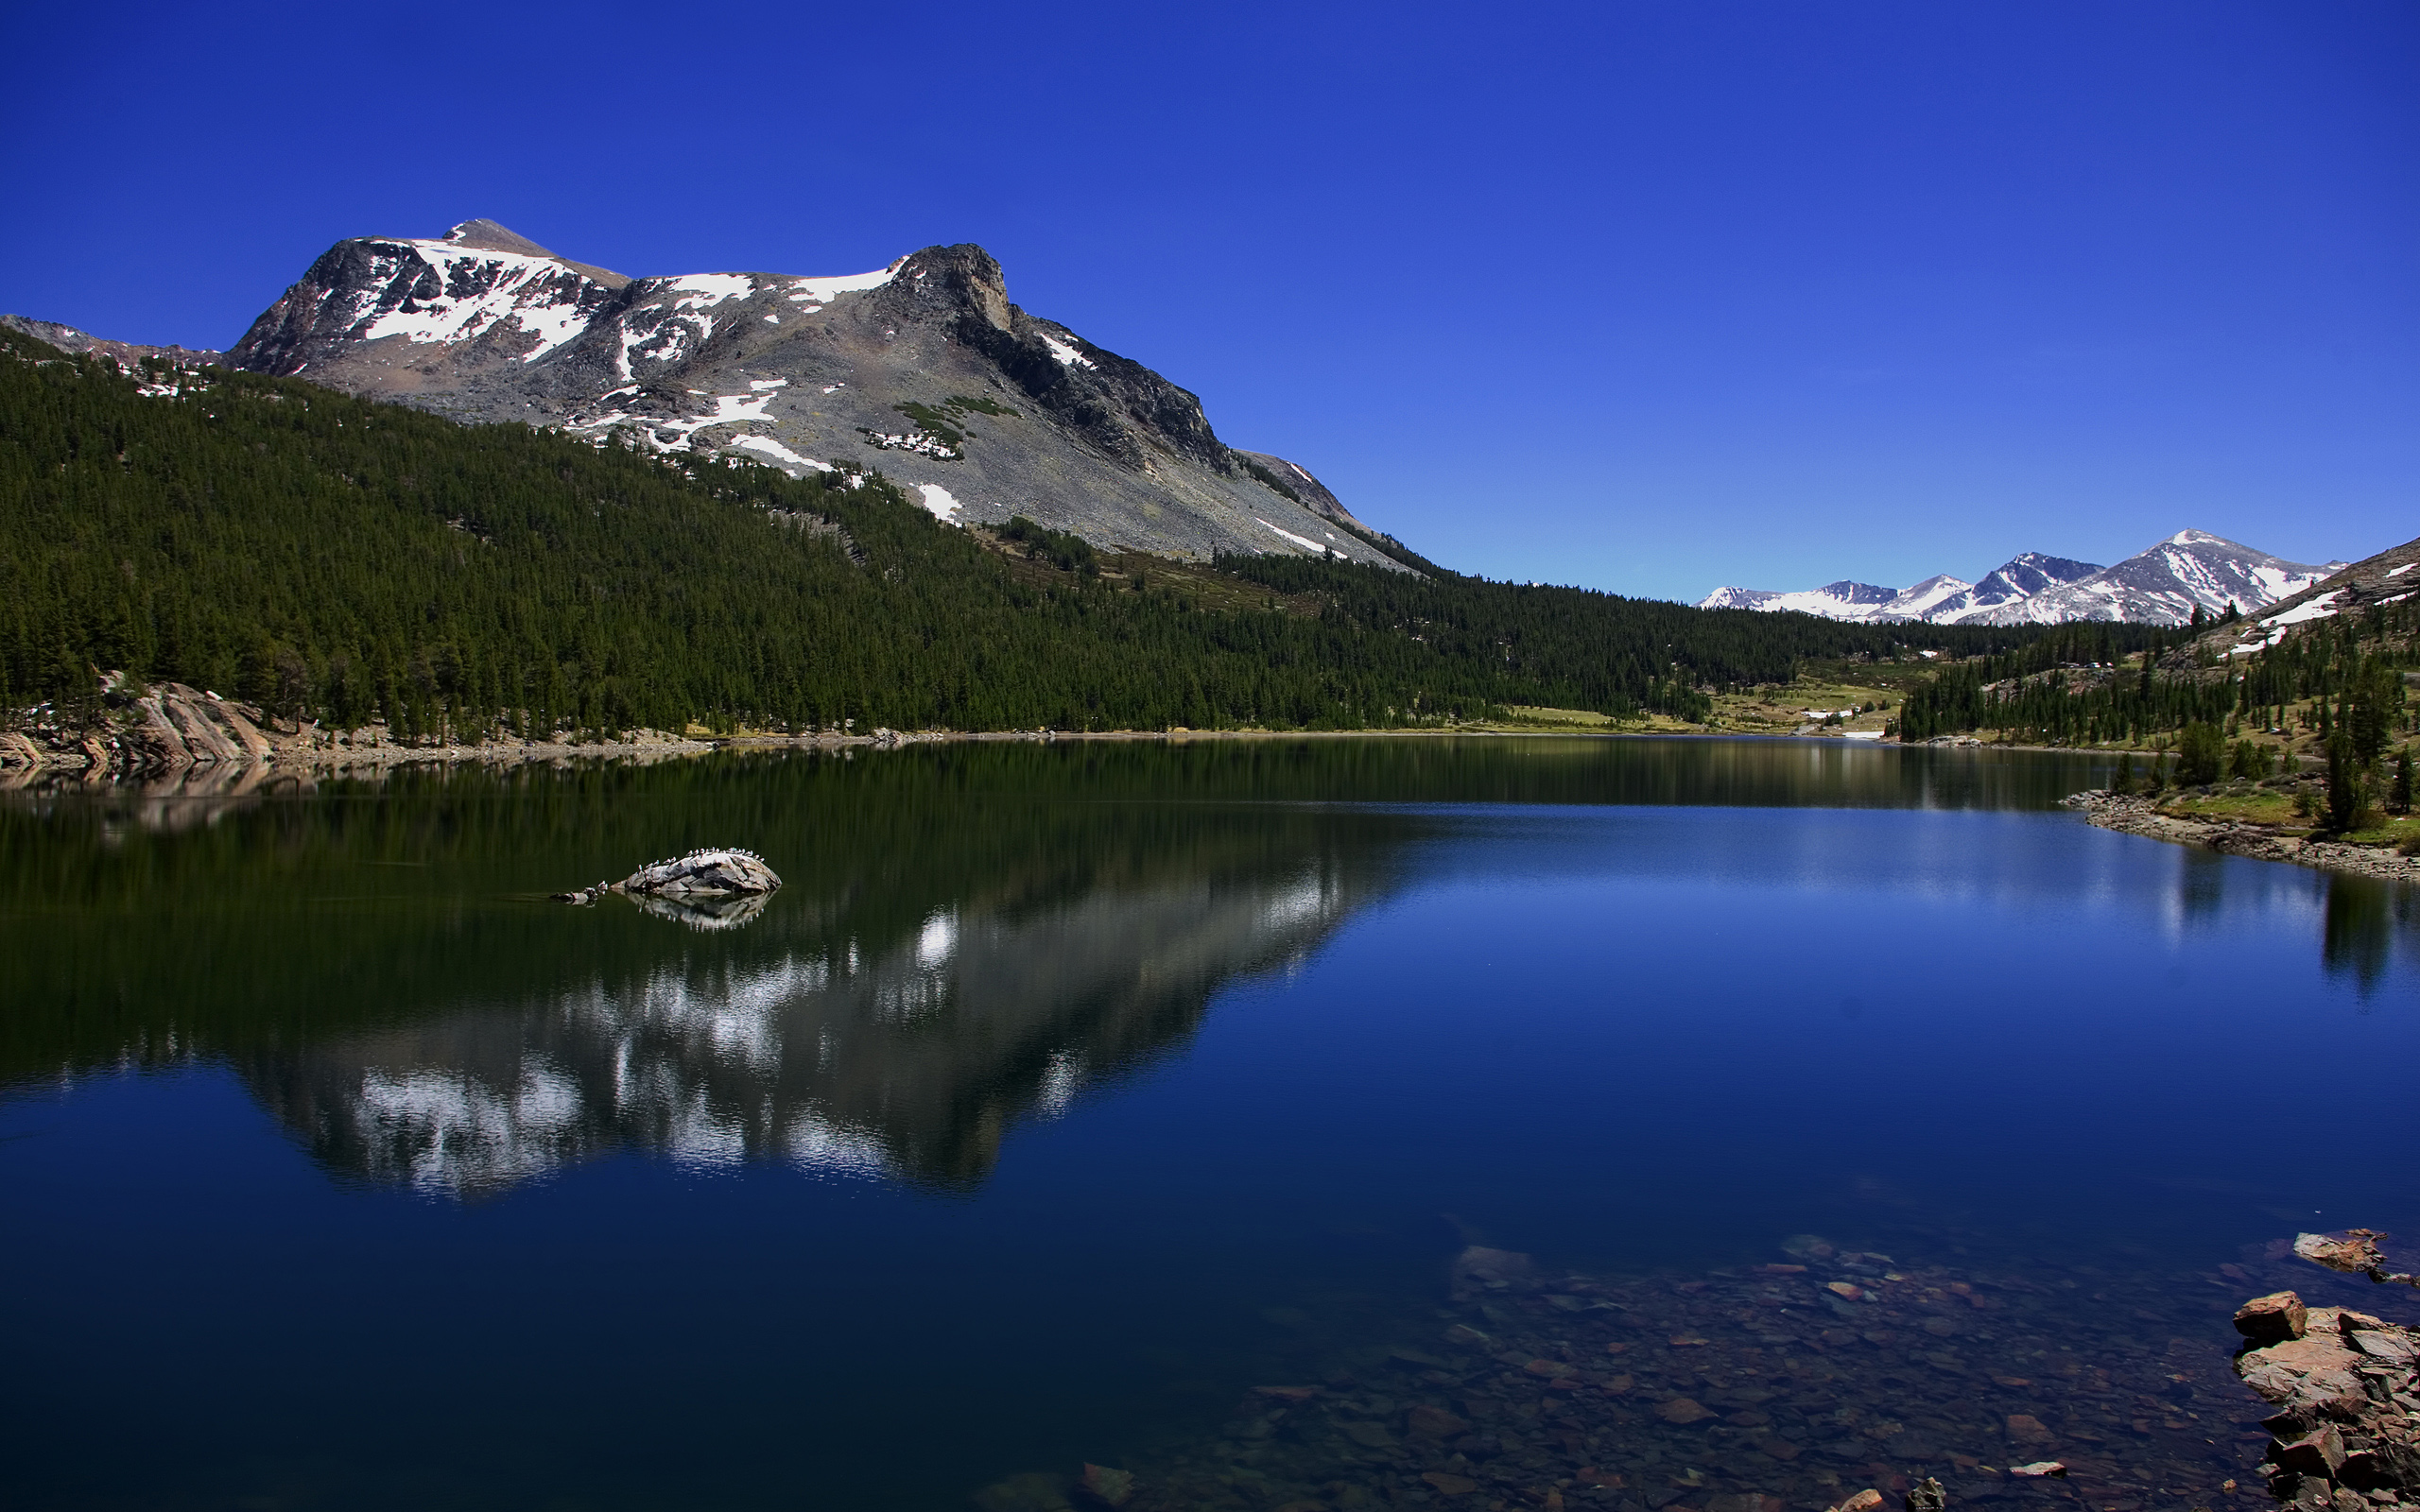 The mountain lake